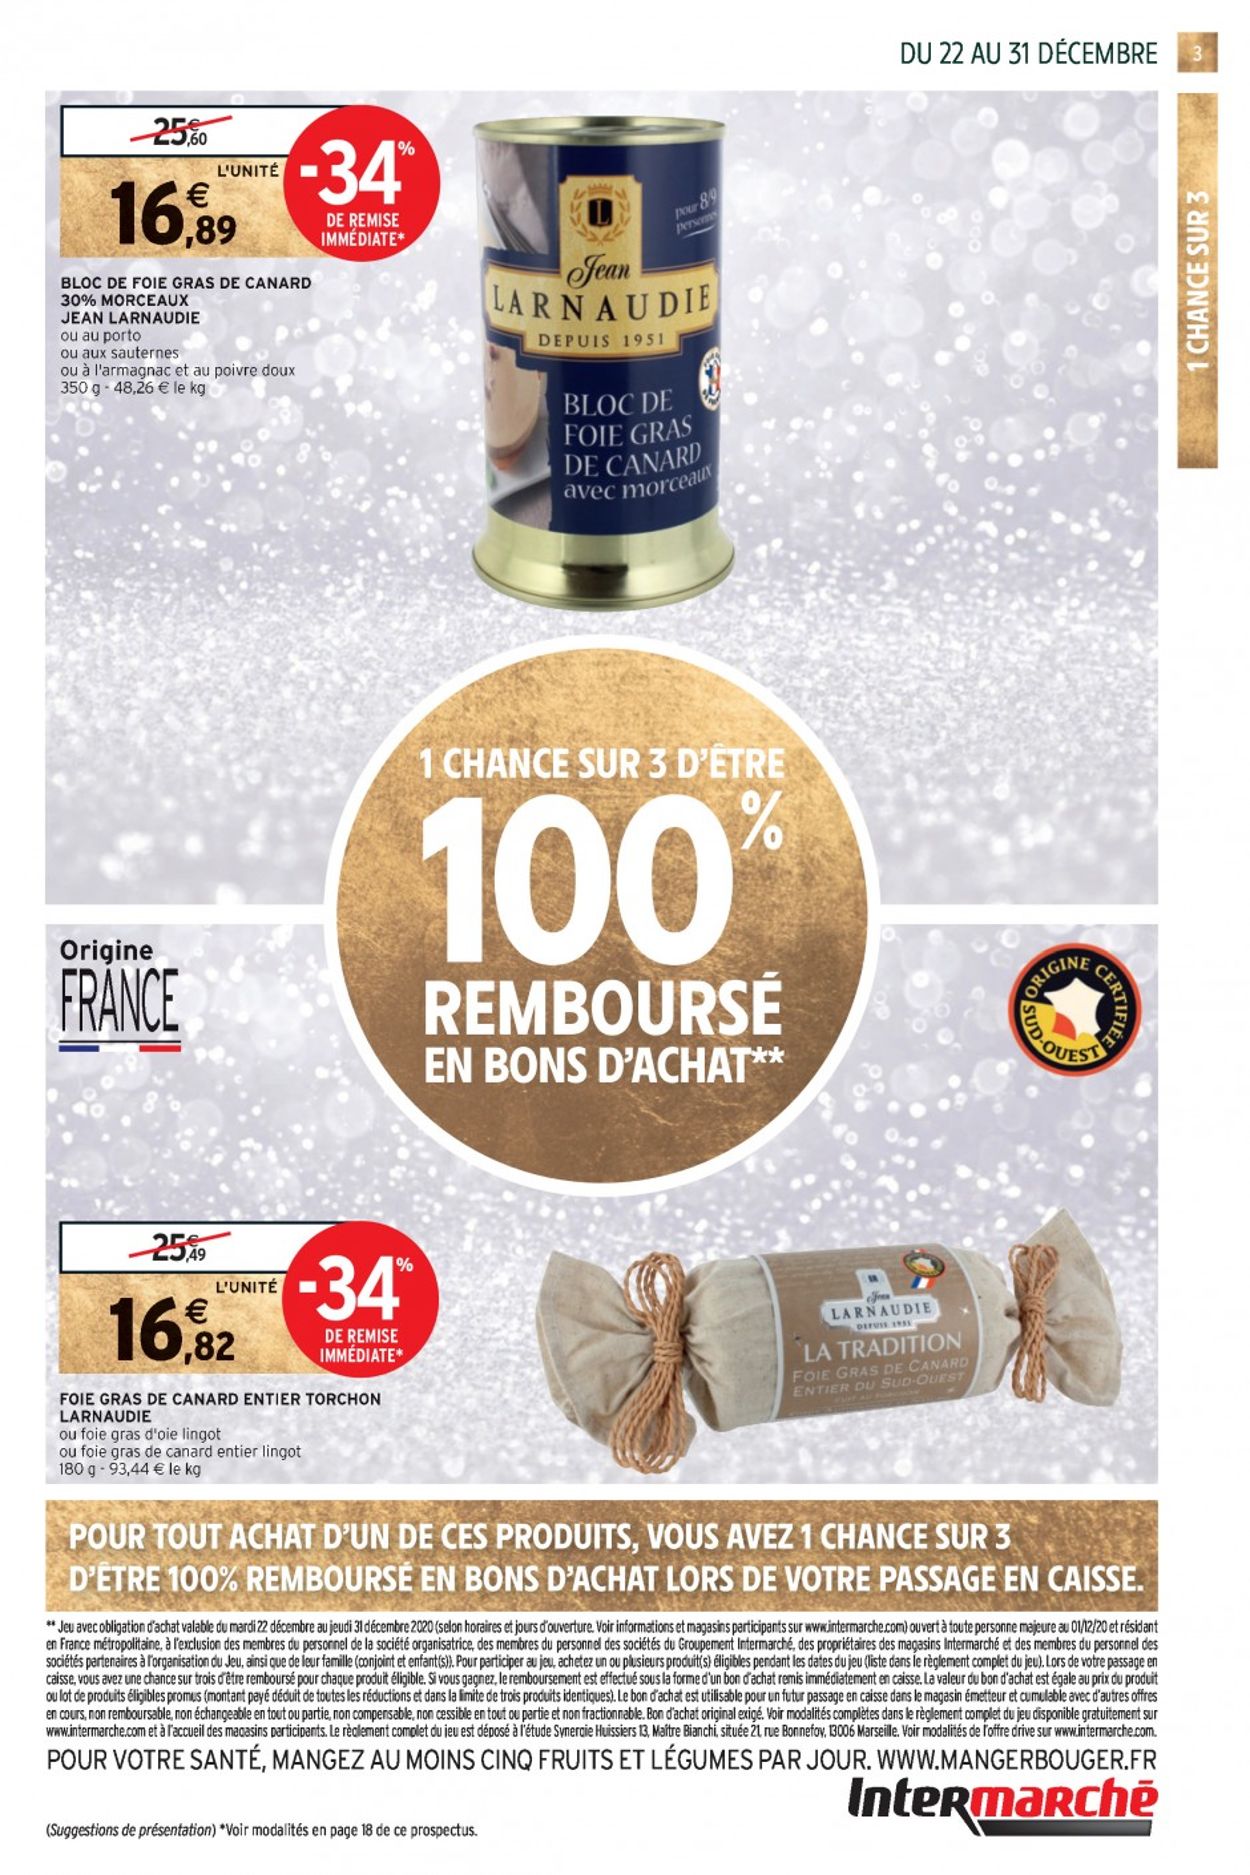 Intermarché Bonnes Fêtes et Meilleurs Prix Catalogue - 22.12-31.12.2020 (Page 3)